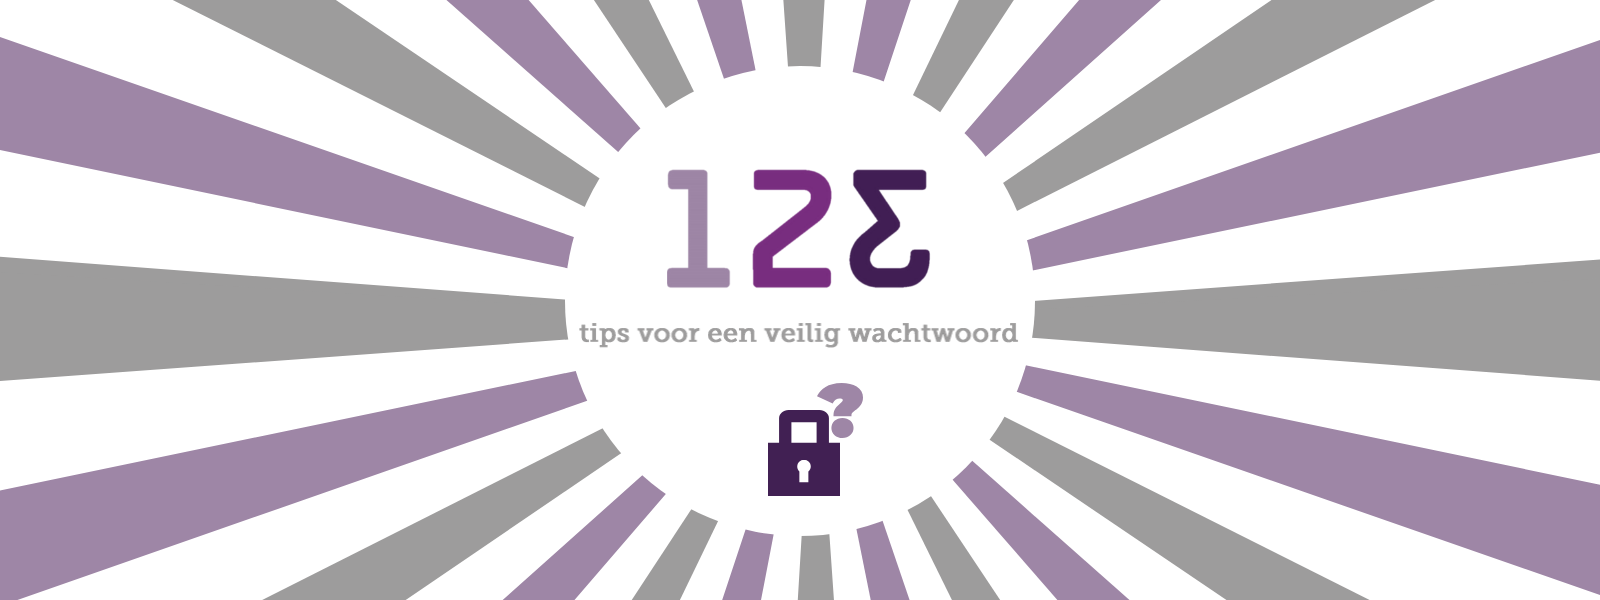 123 tips voor een veilig wachtwoord